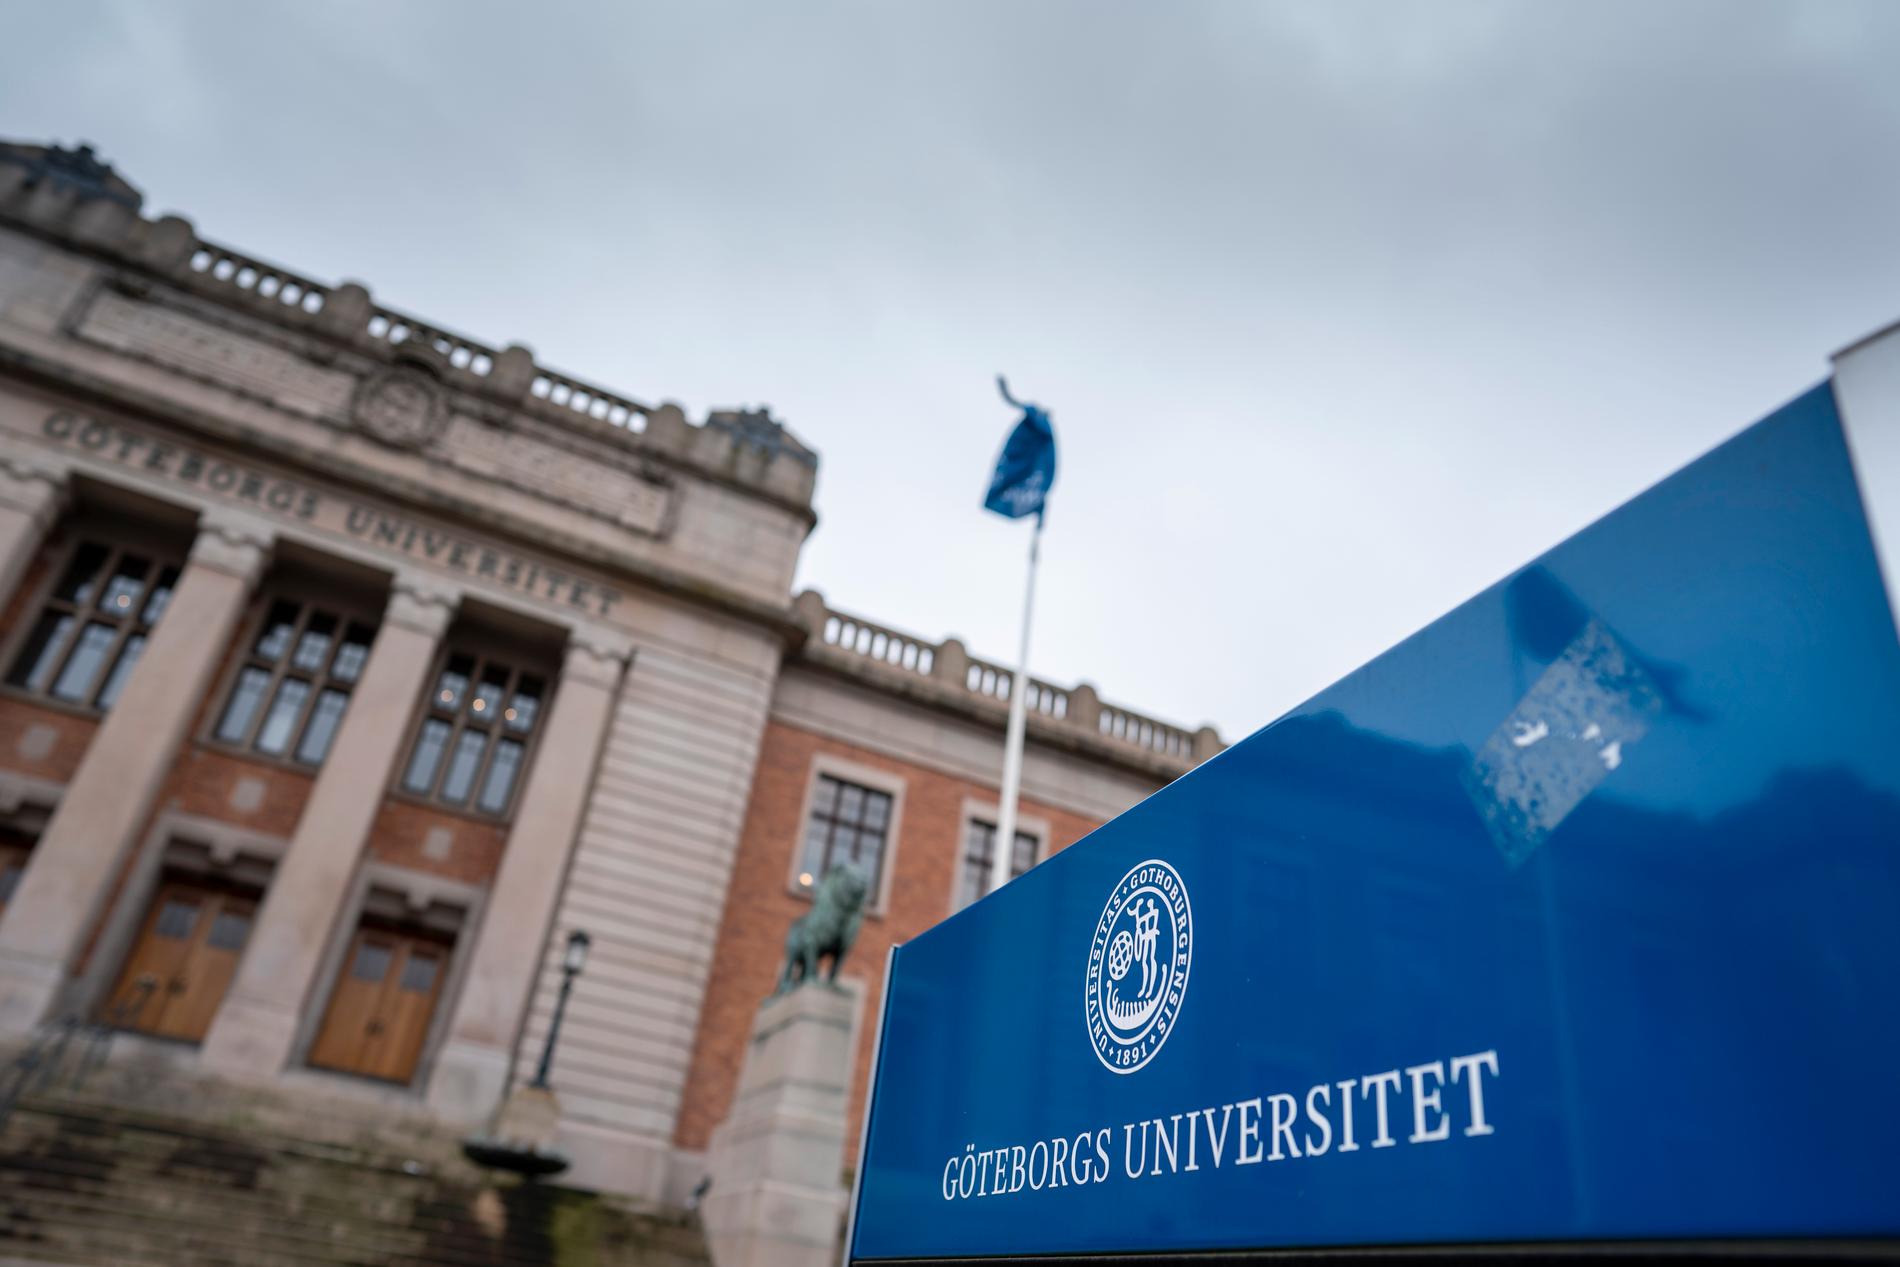 Medarbetarna på Göteborgs universitet har fått sina mejladresser utslagna efter att flera e-postservrar kraschat.